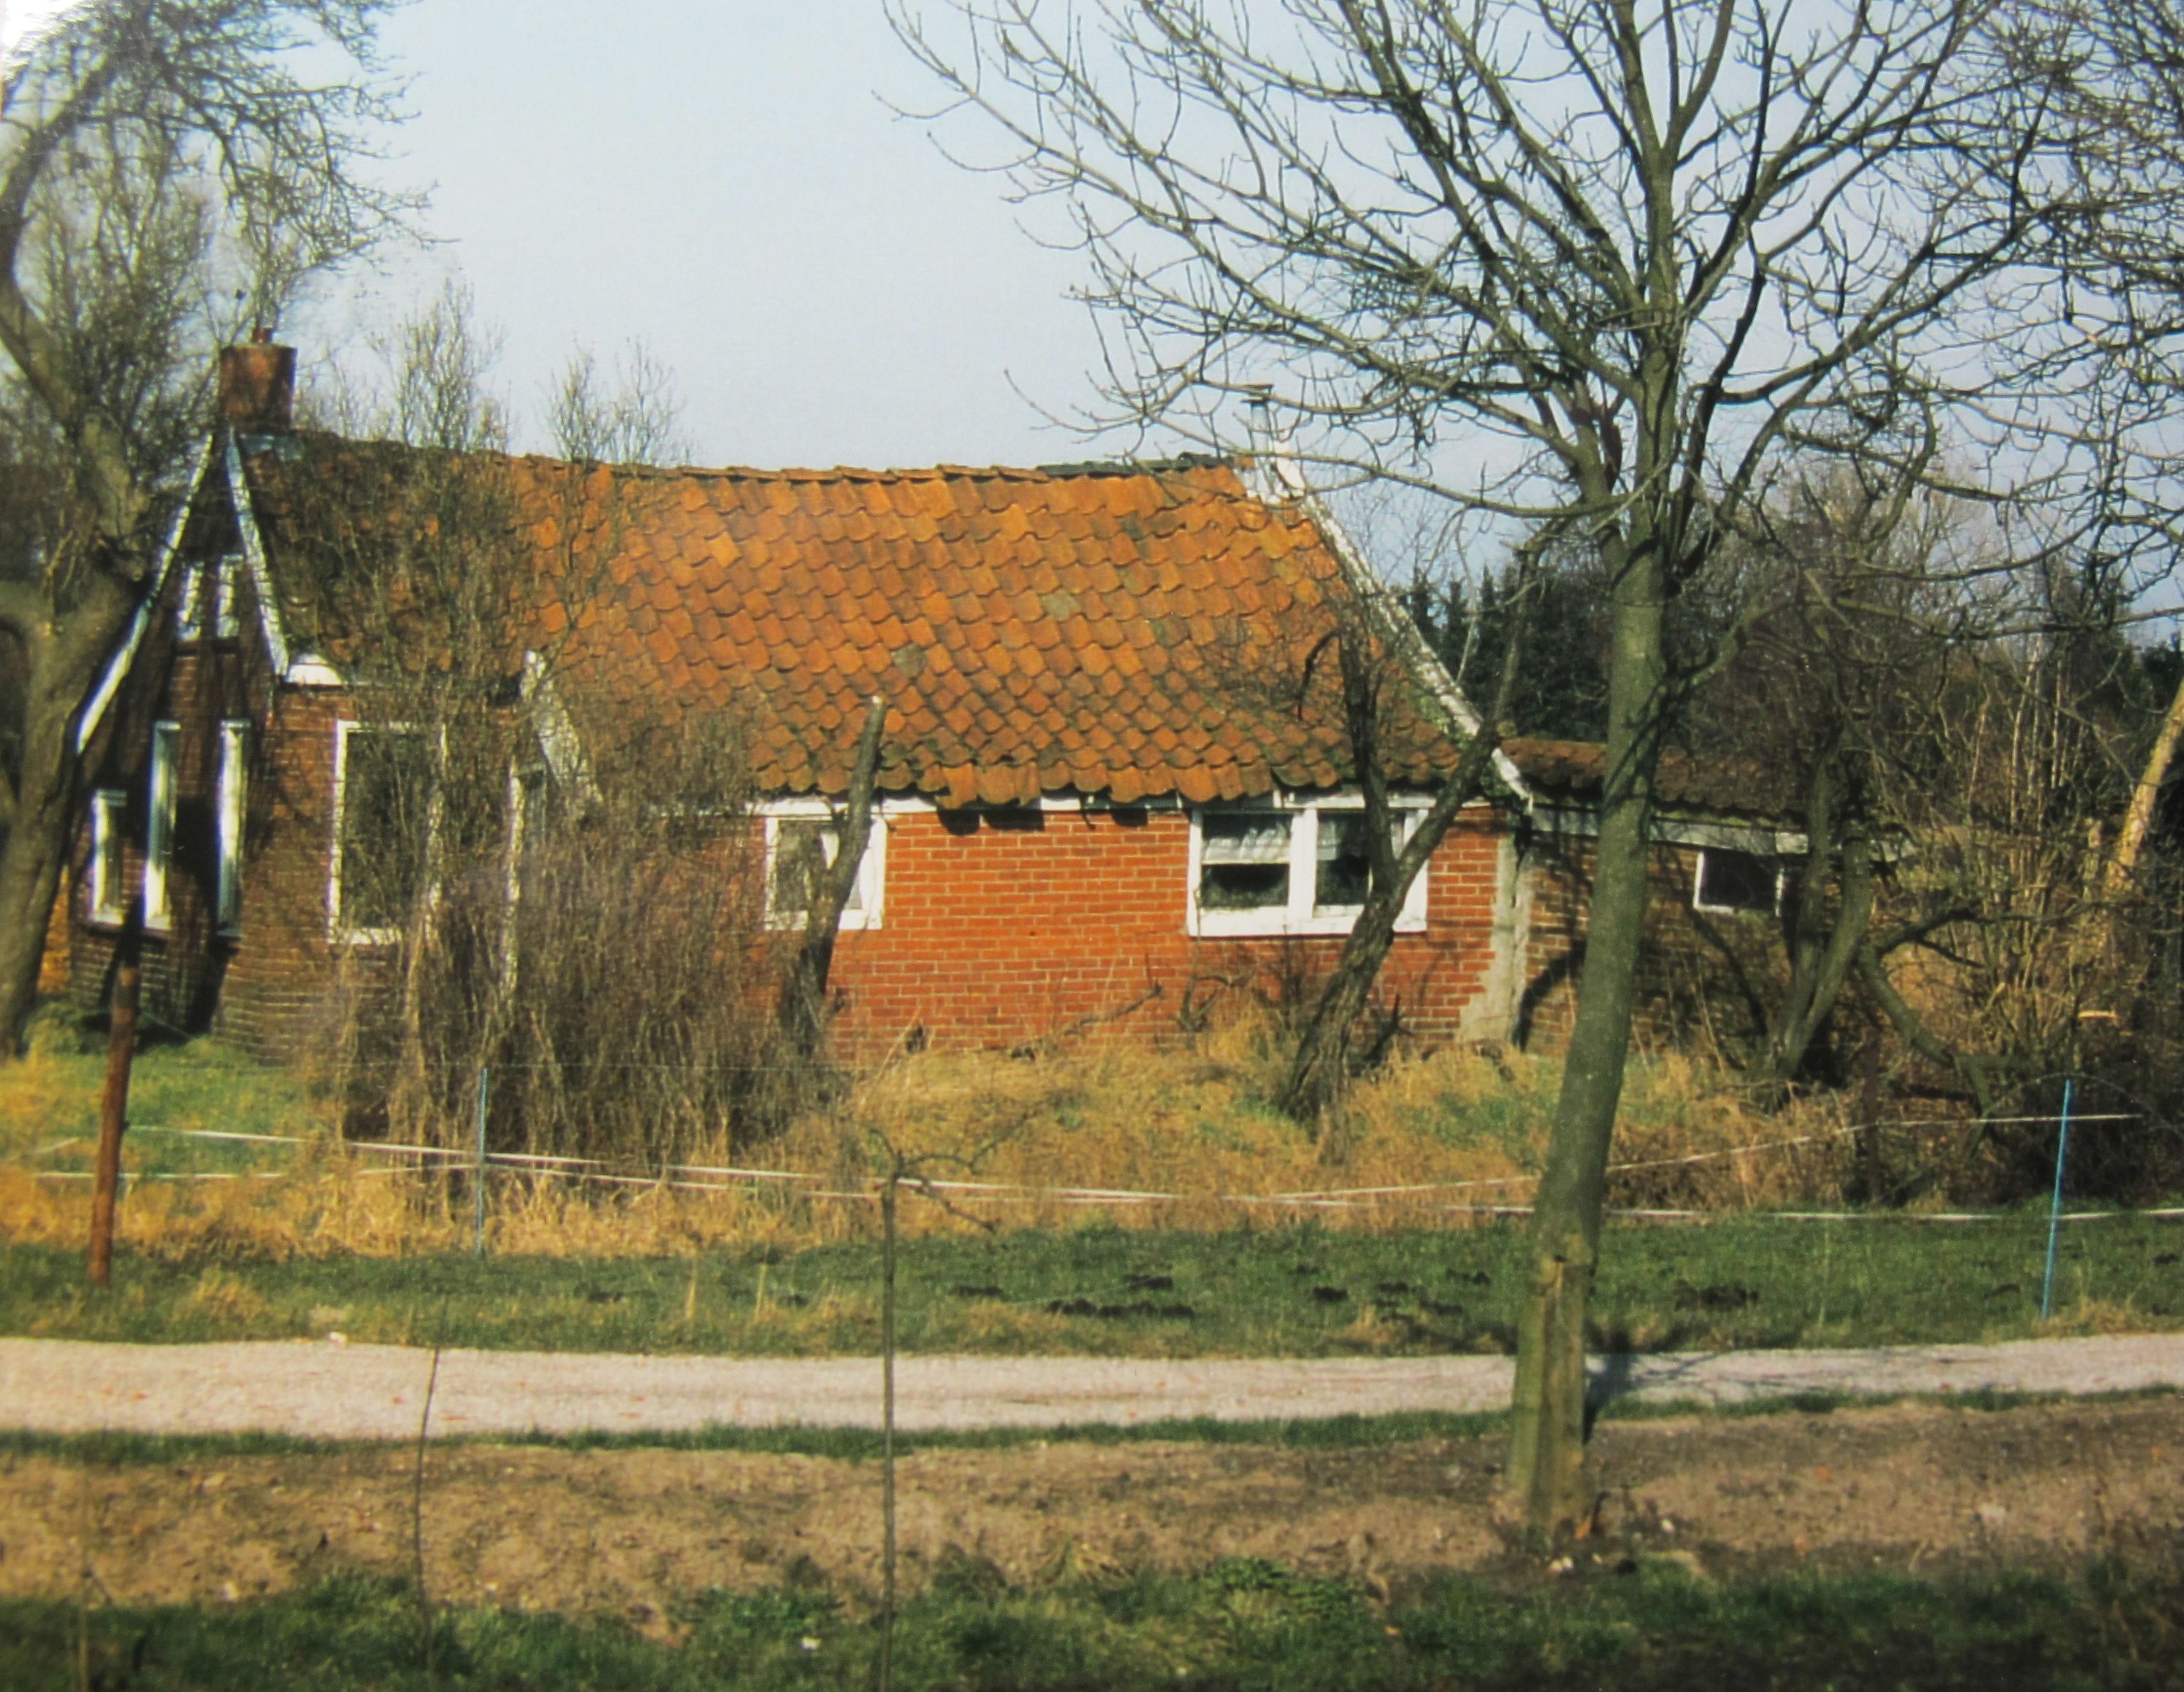 Woning van na de de invoering van de woningwet te Meerland. Deze woning is inmiddels geruimd. Foto: ©J.P. Koers, Scheemda.